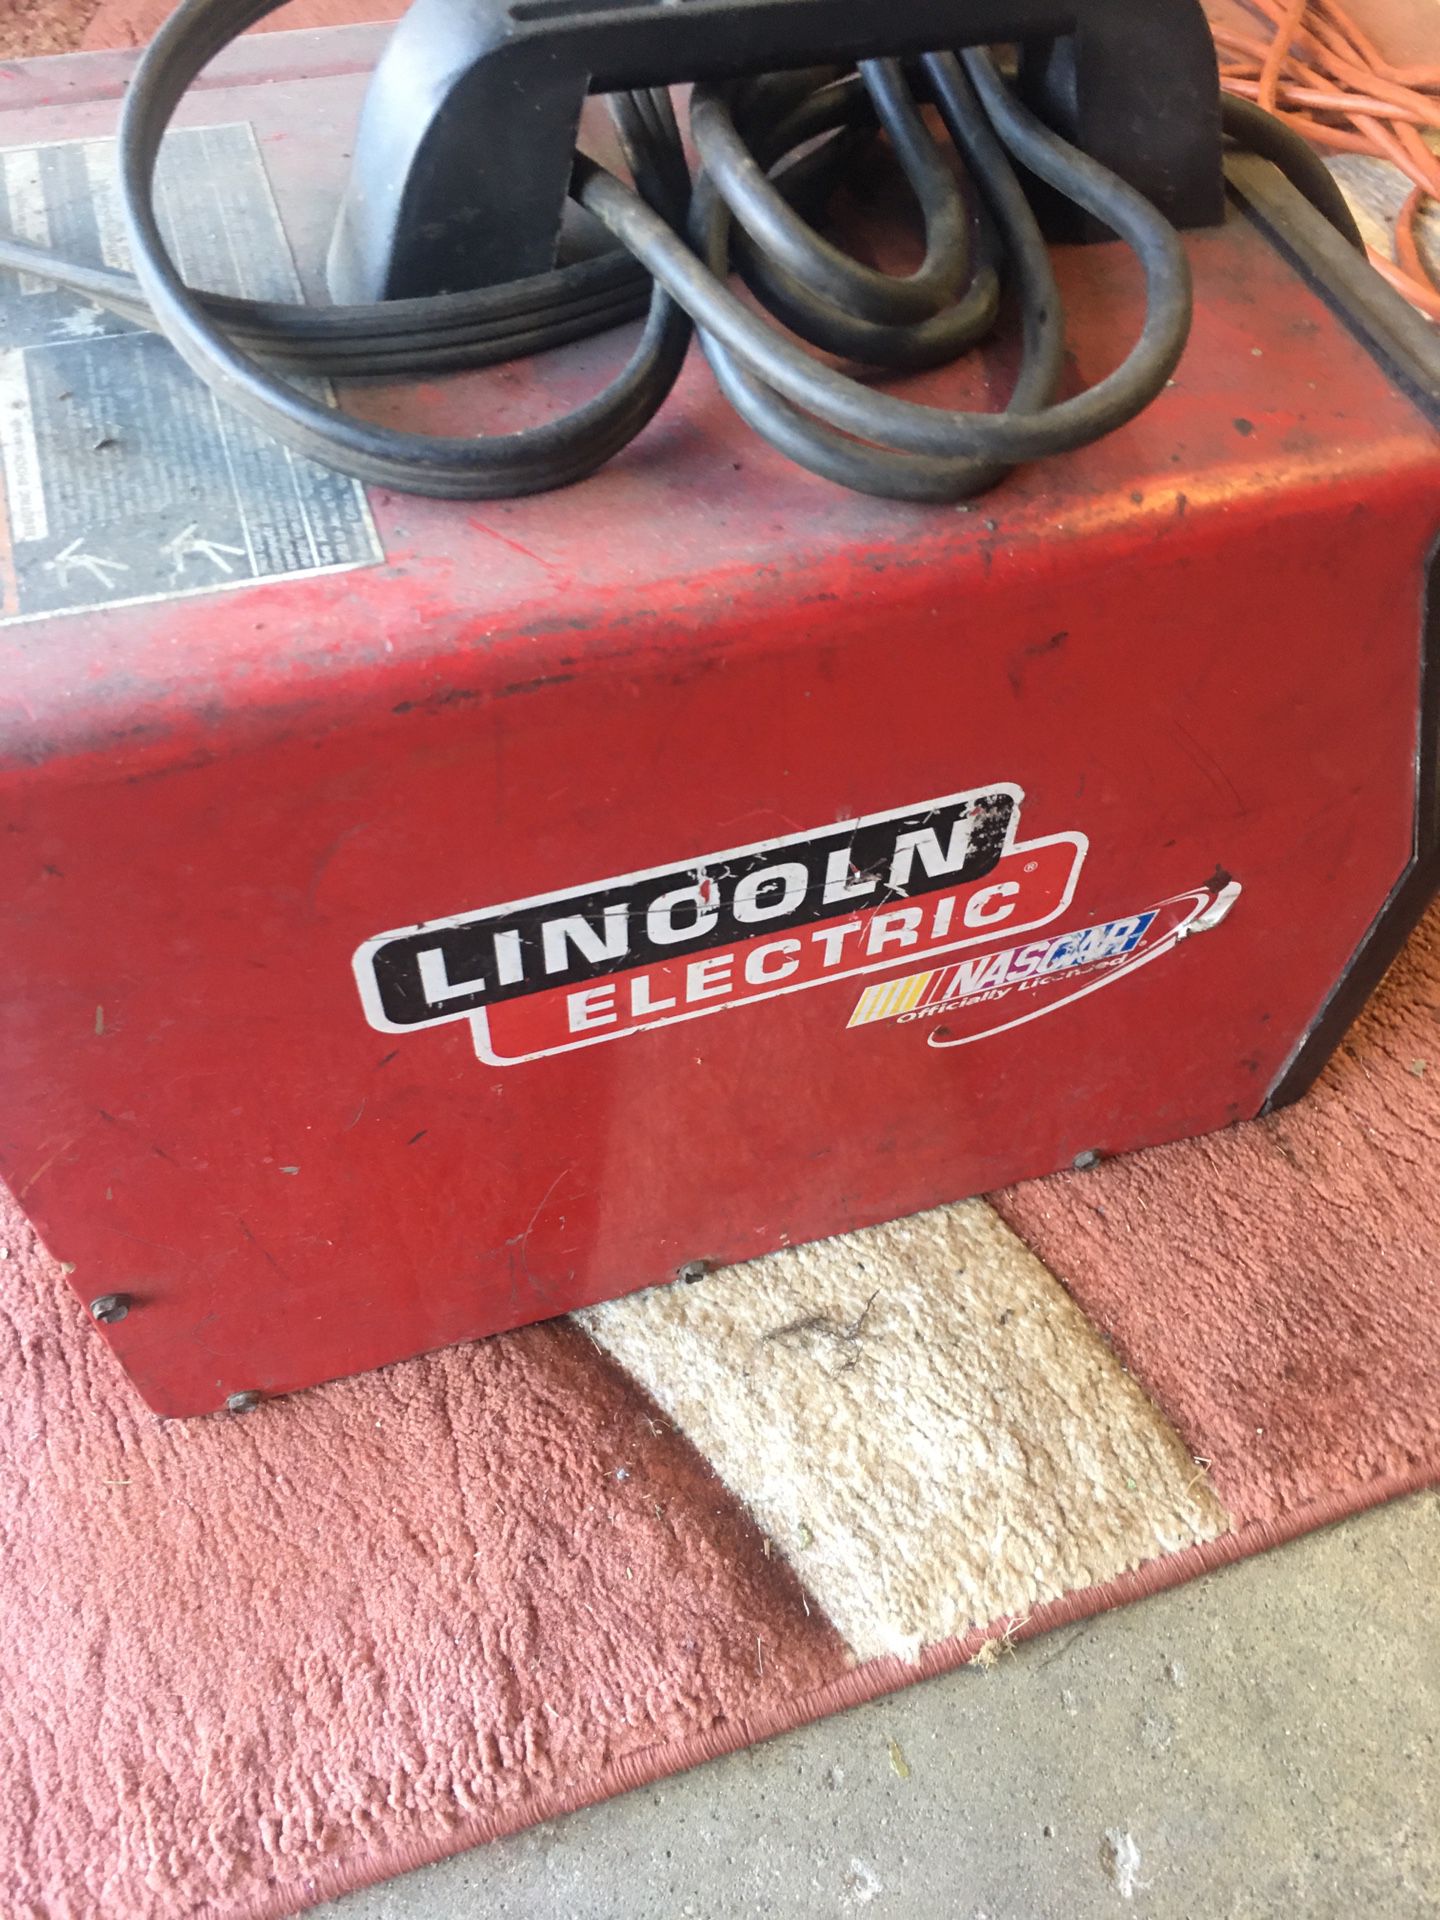 Lincoln welder machine